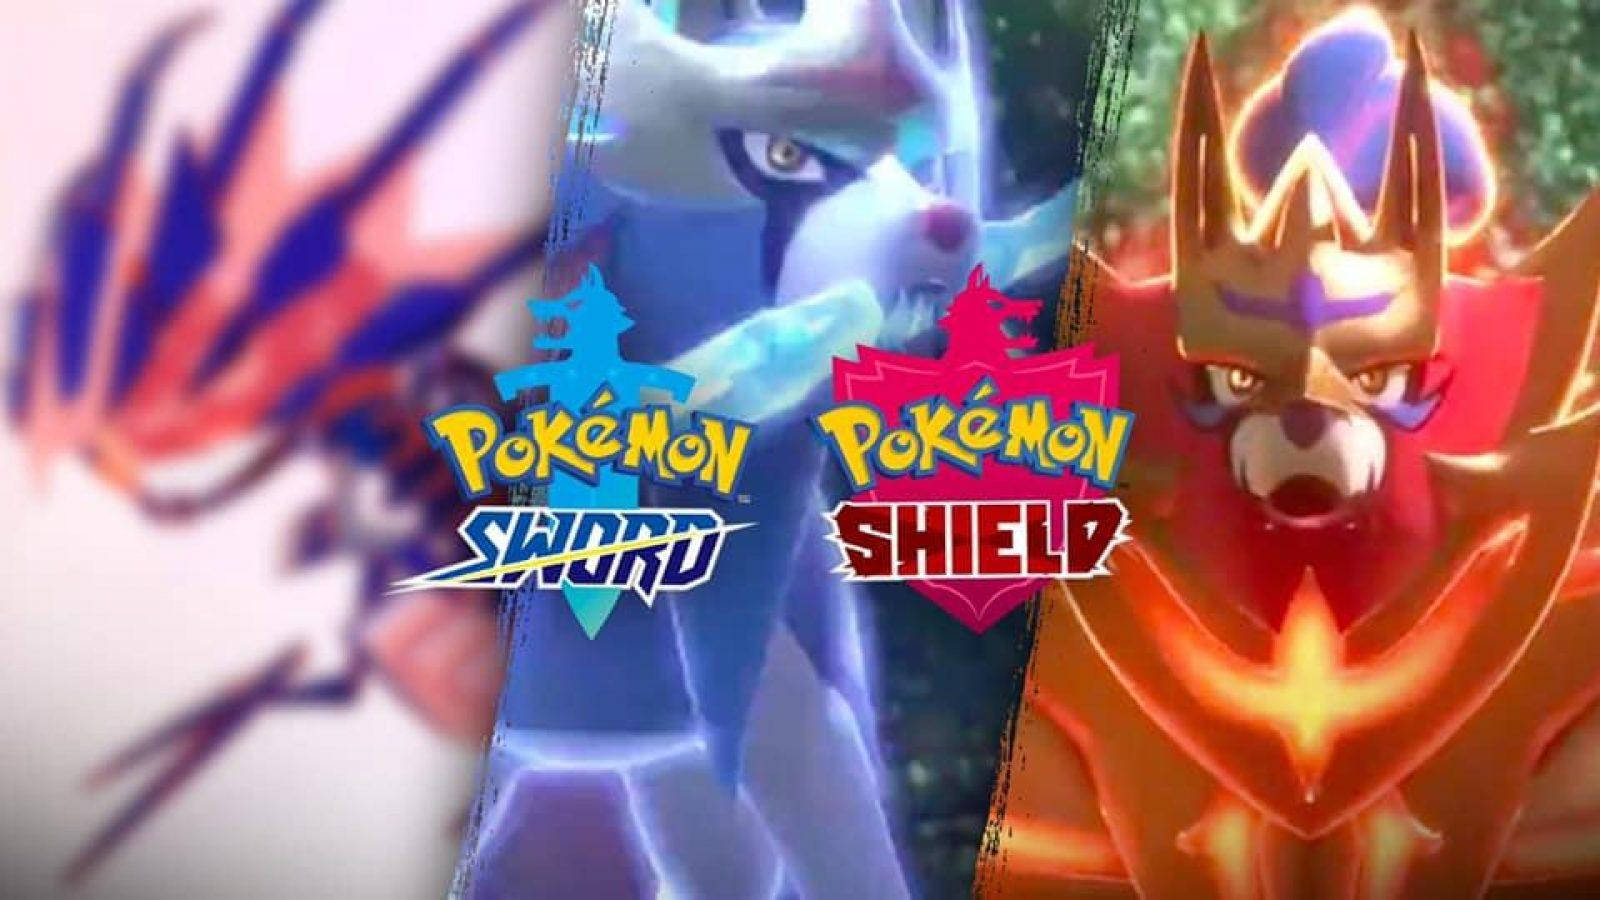 Pokémon Sword Zamazenta Poster Wallpaper